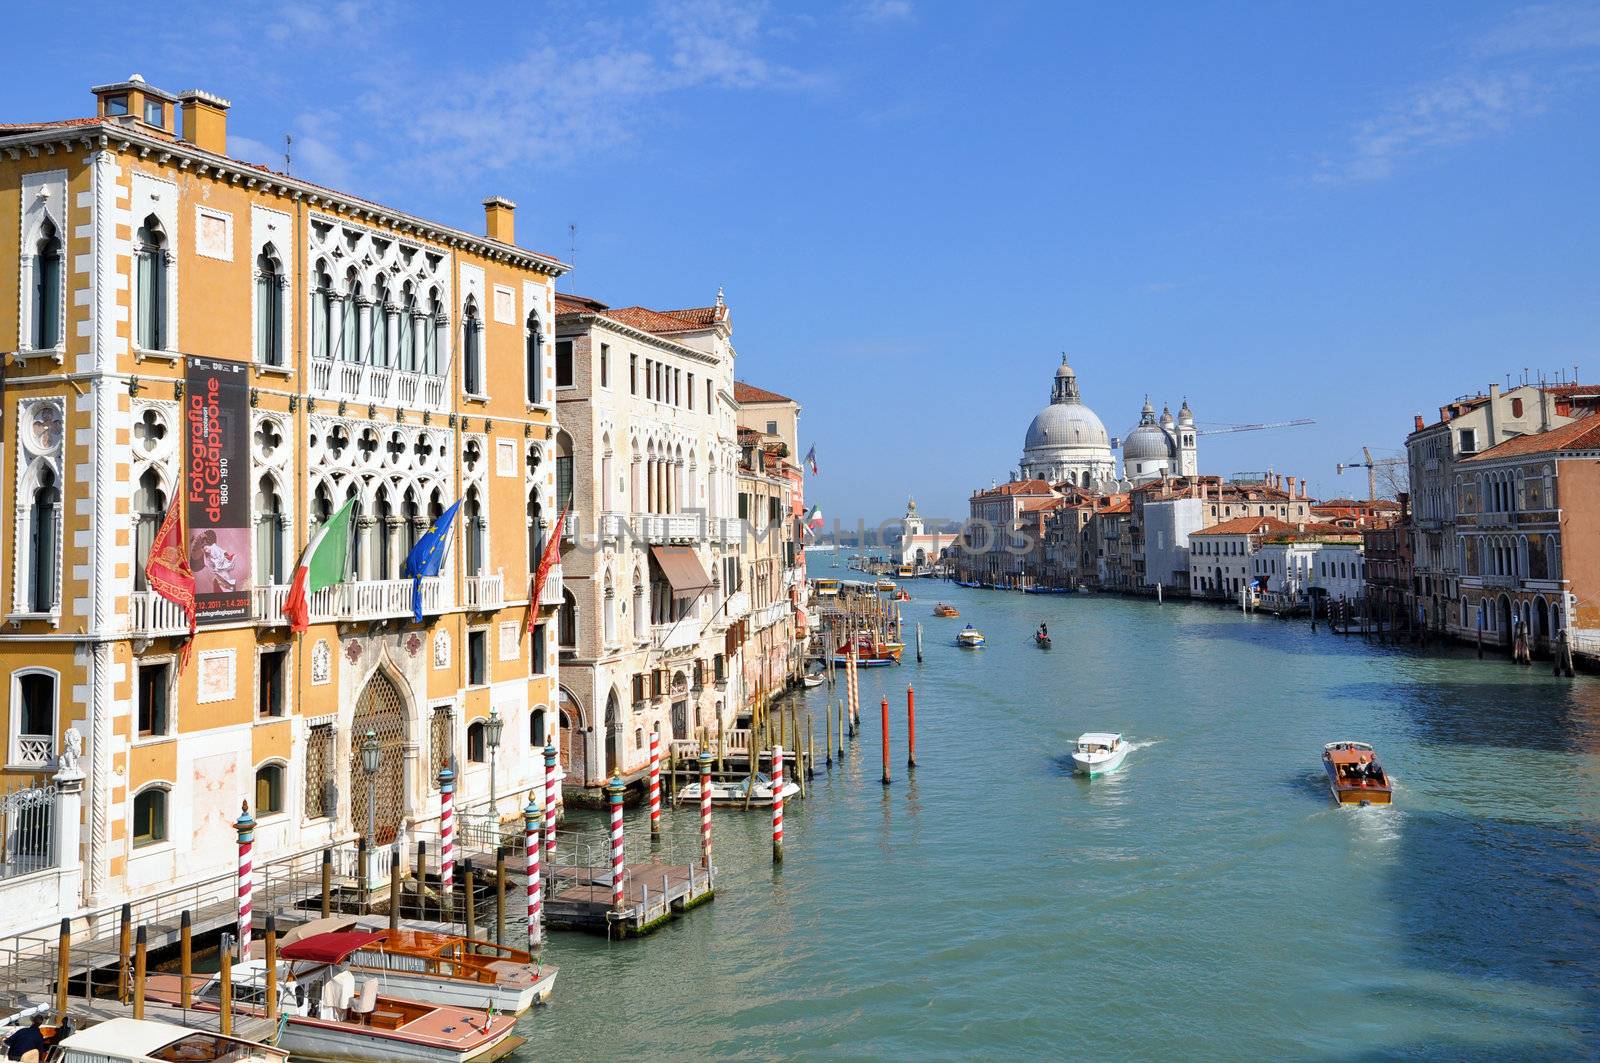 Canal Grande and Santa Maria della Salute - Venezia - Italy